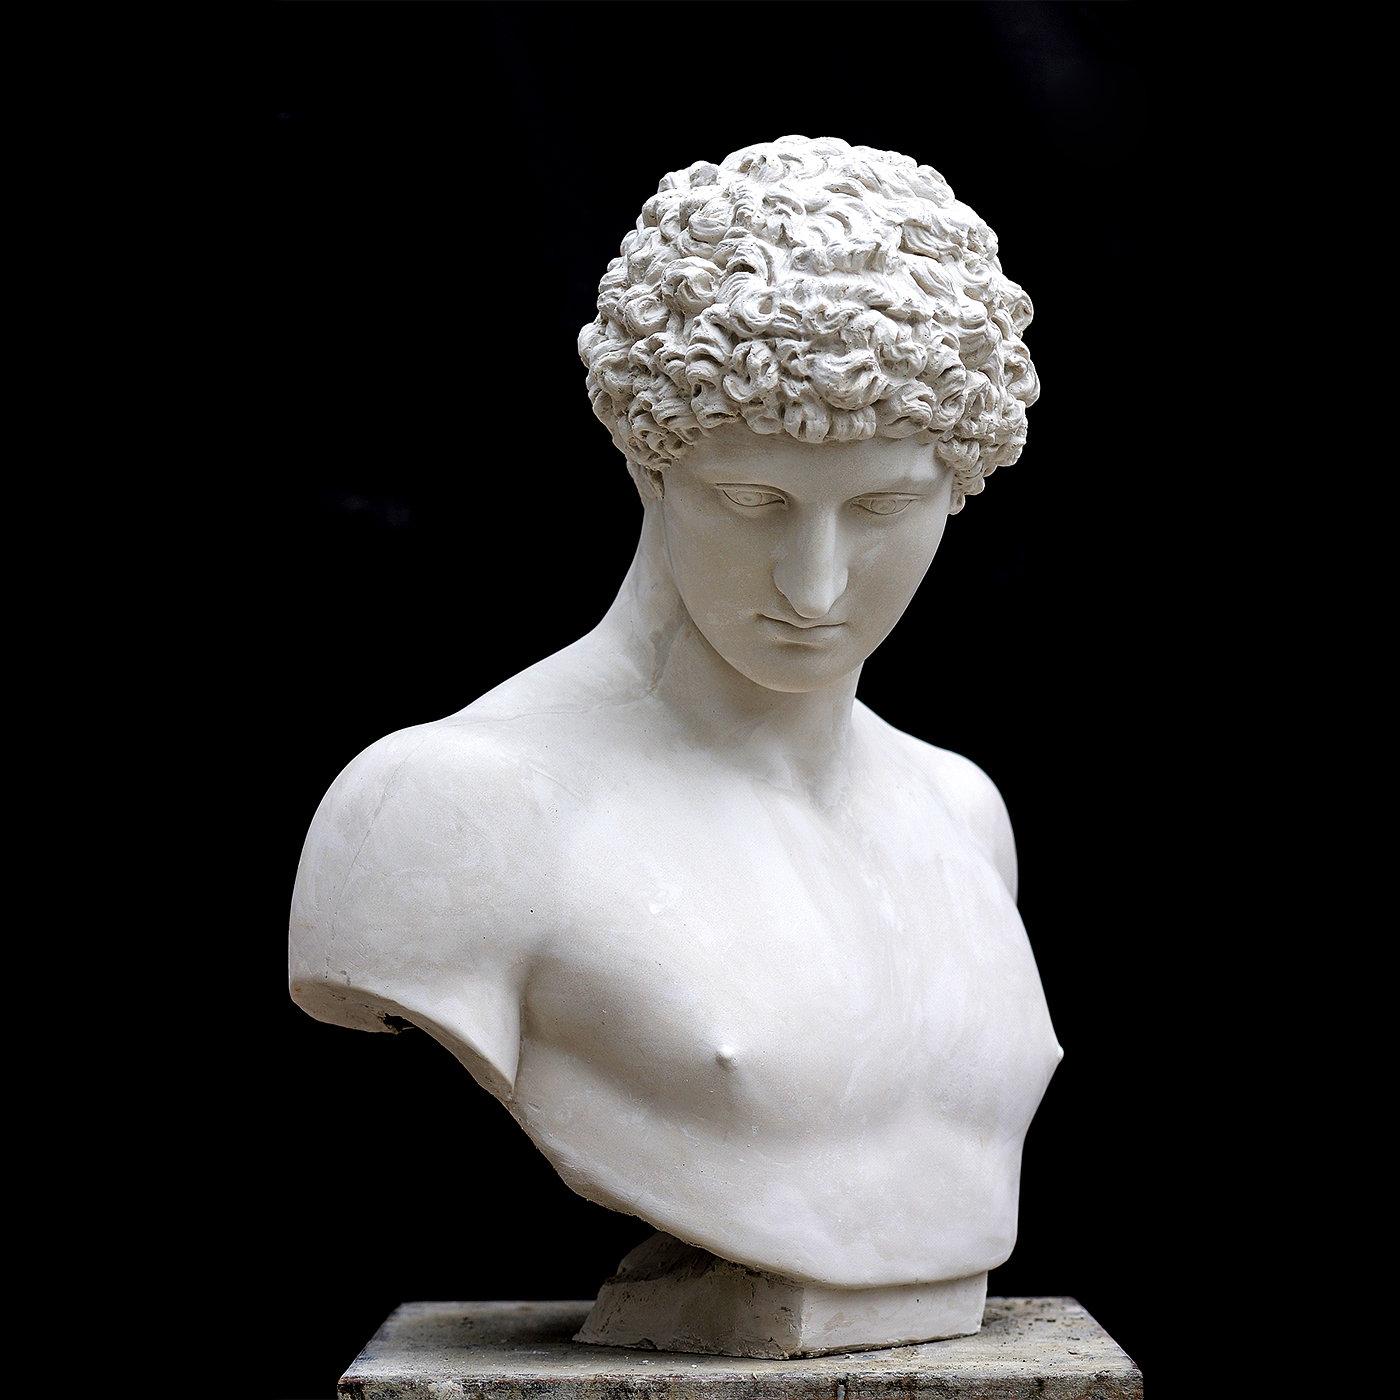 Les traits élégants du jeune Antinoüs, favori du bien-aimé empereur romain Hadrien, sont magistralement capturés avec une richesse exceptionnelle dans ce buste en plâtre du héros grec antique, un chef-d'œuvre créé par les artisans de la Gallery of